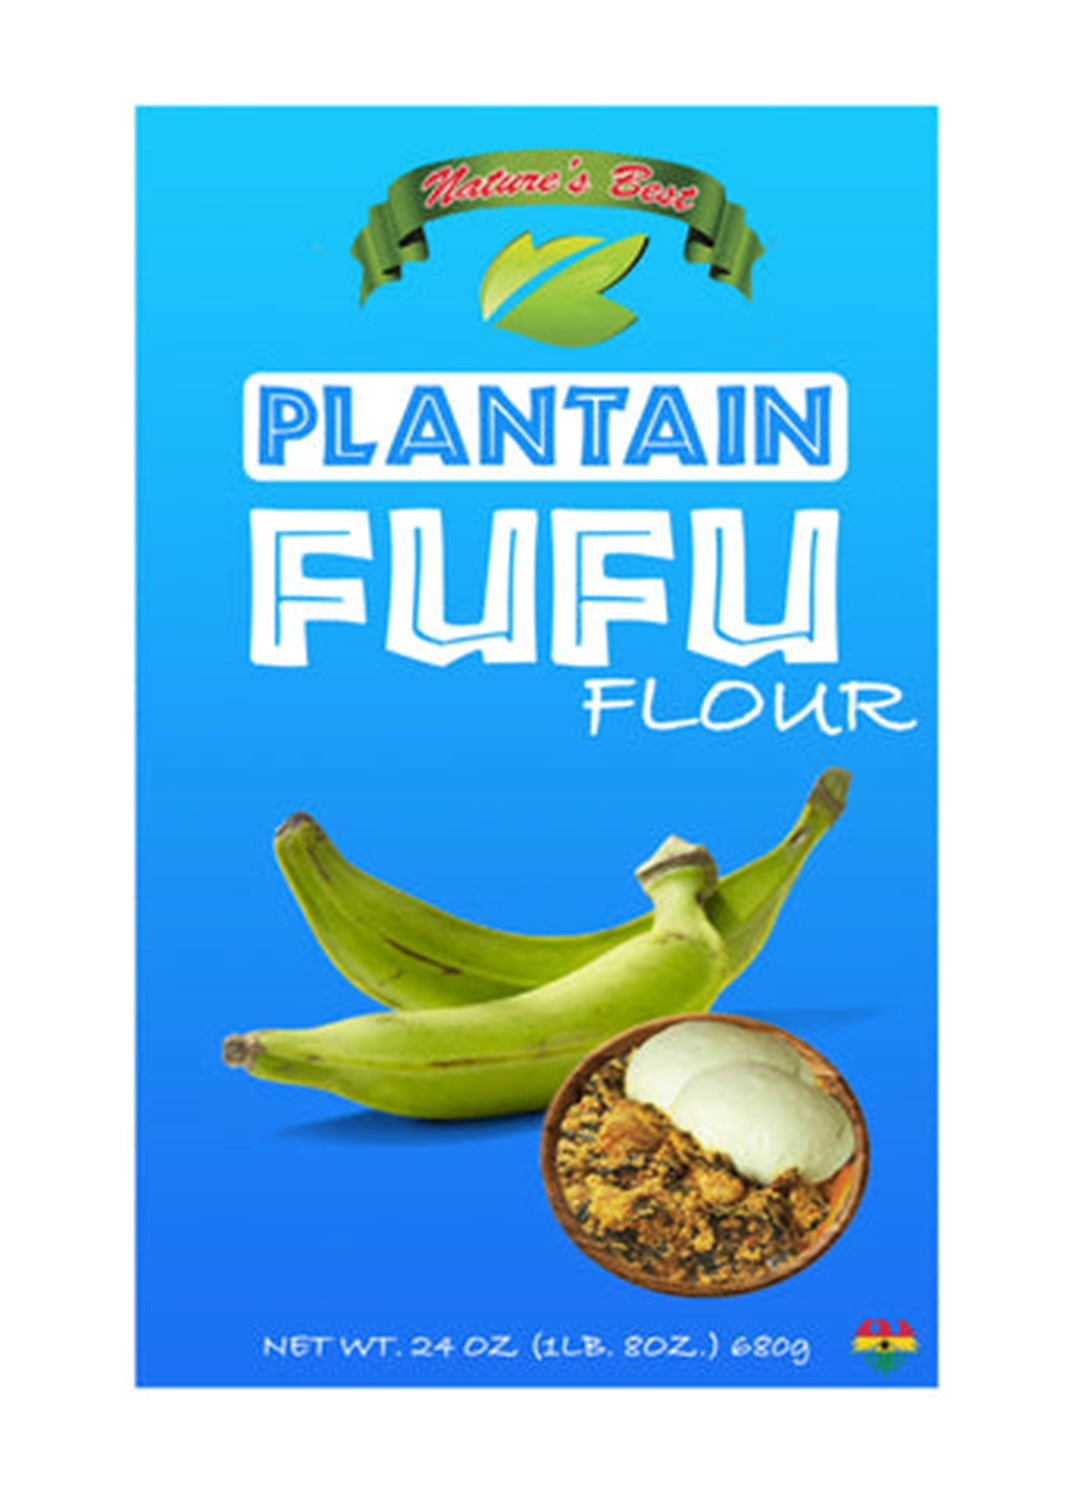 Plantain Fufu Flour - Nature's Best